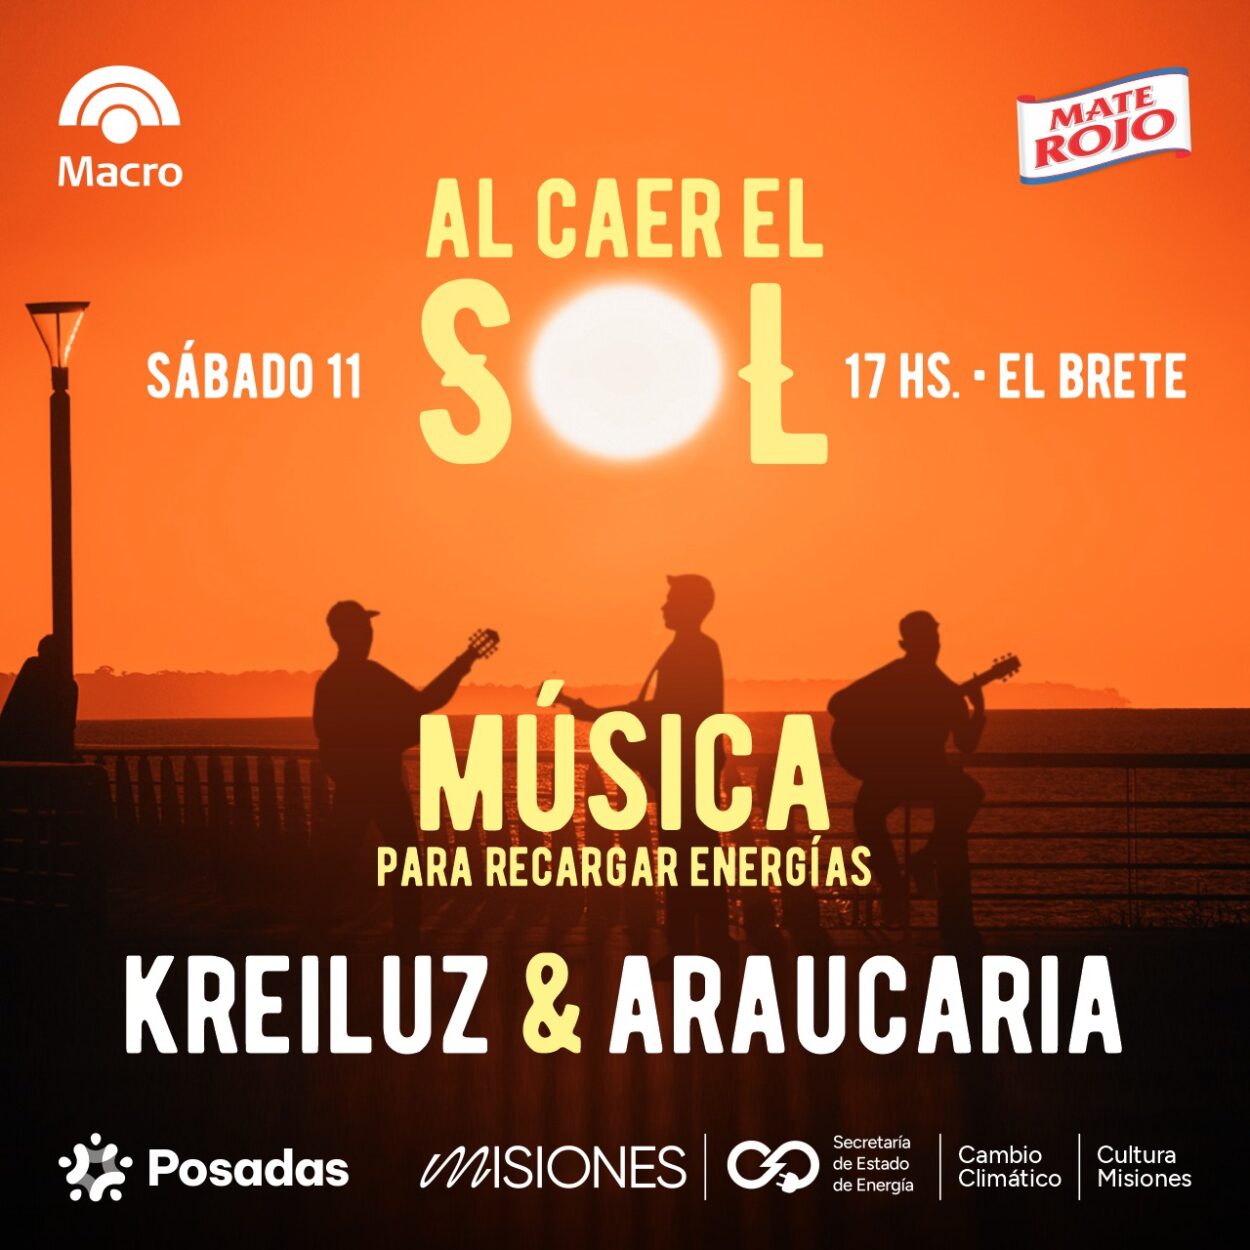 Araucaria y Kreiluz aportarán su energía musical este sábado en El Brete imagen-60